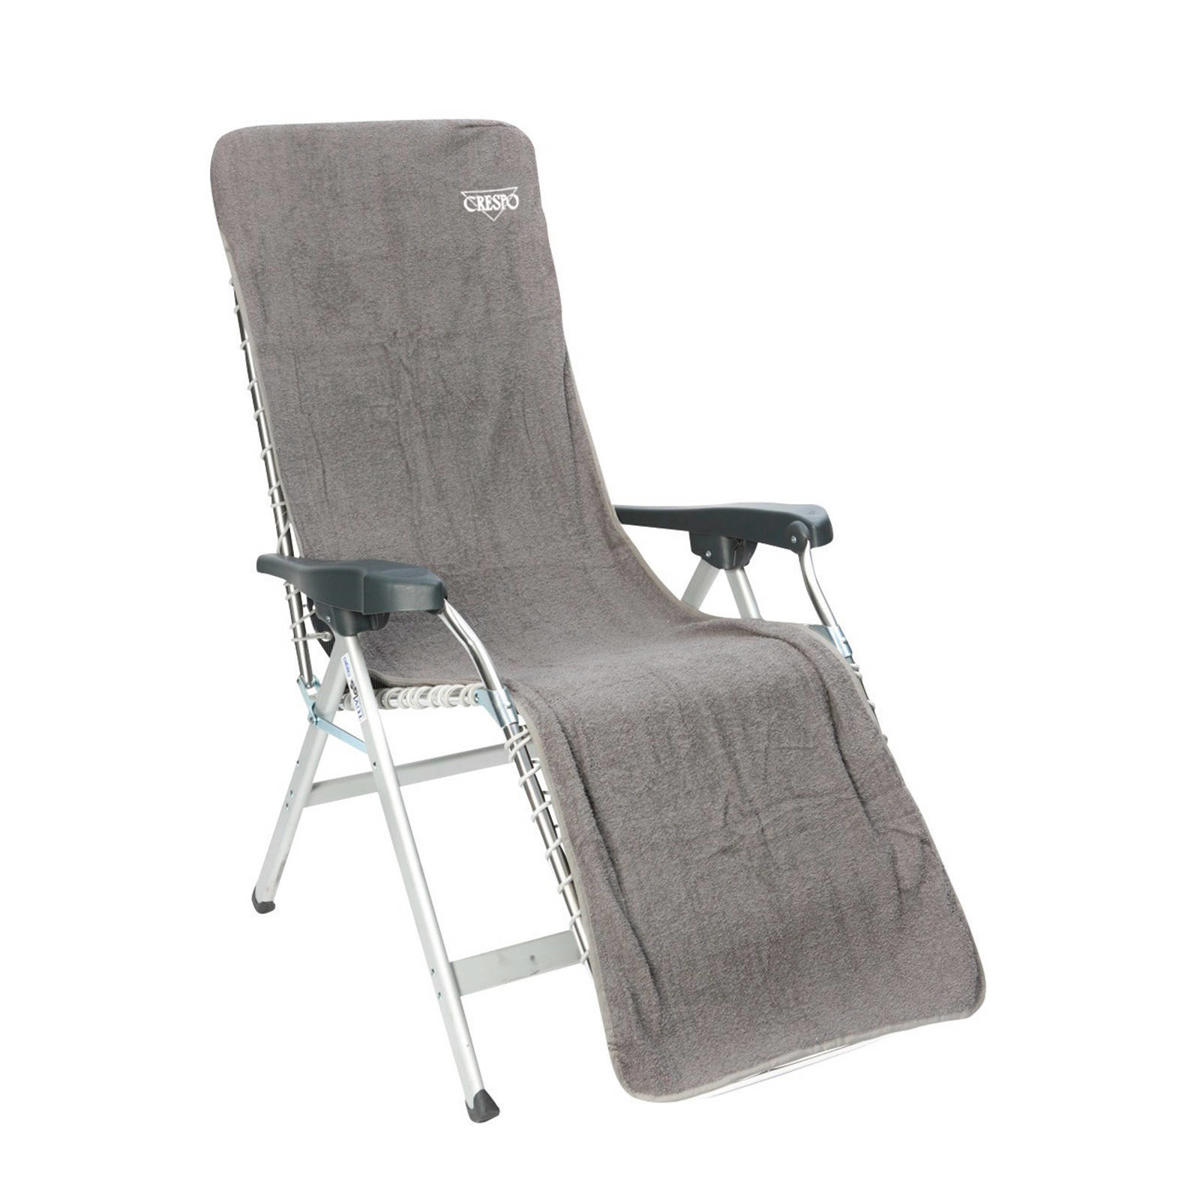 Crespo stoelhoes relaxstoel wehkamp